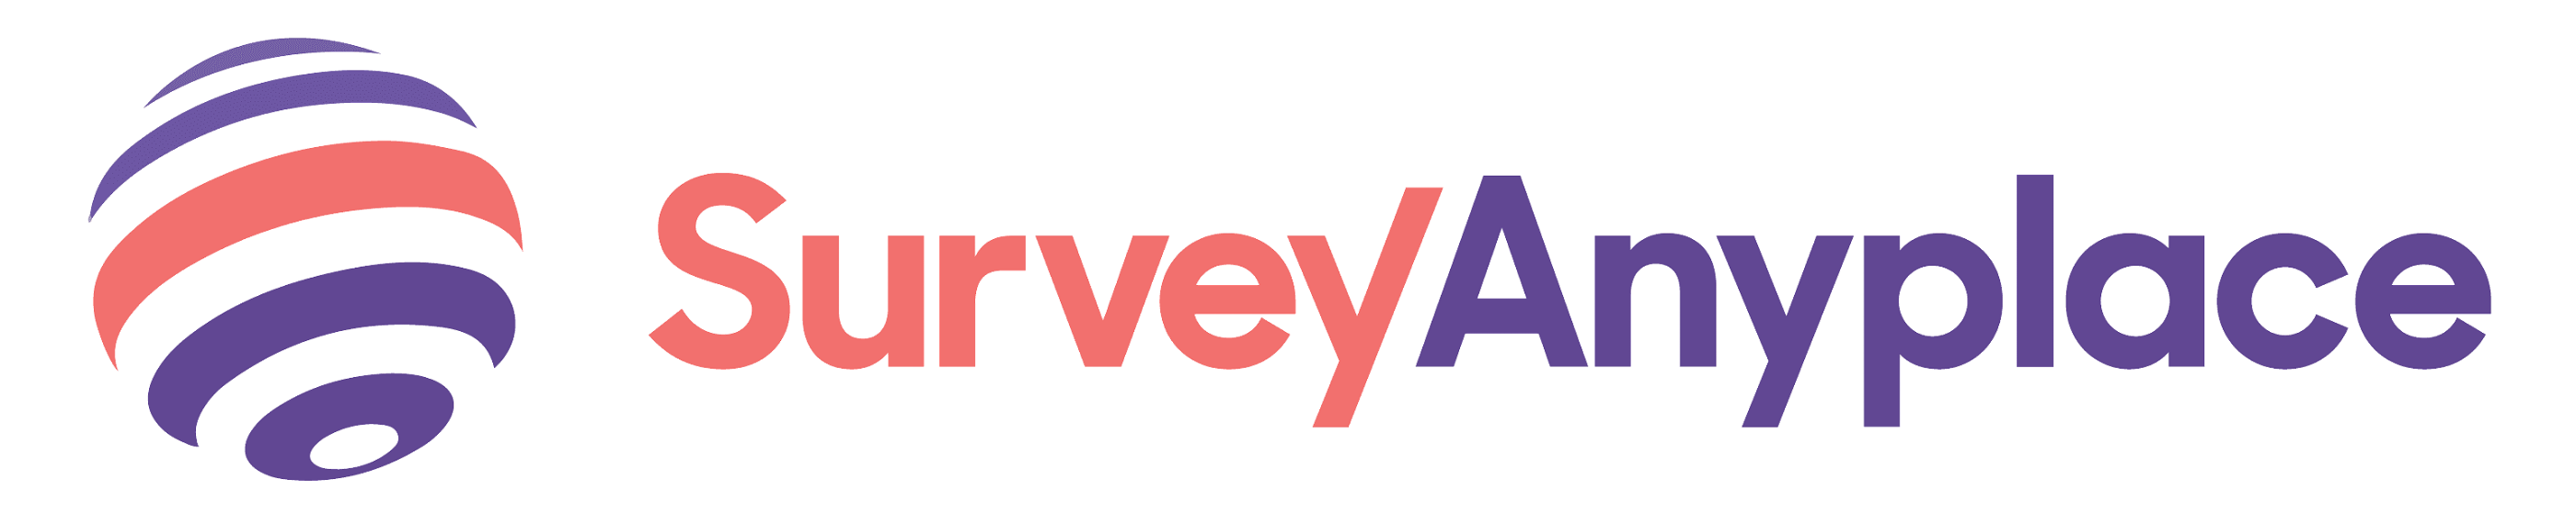 surveyanyplace logo